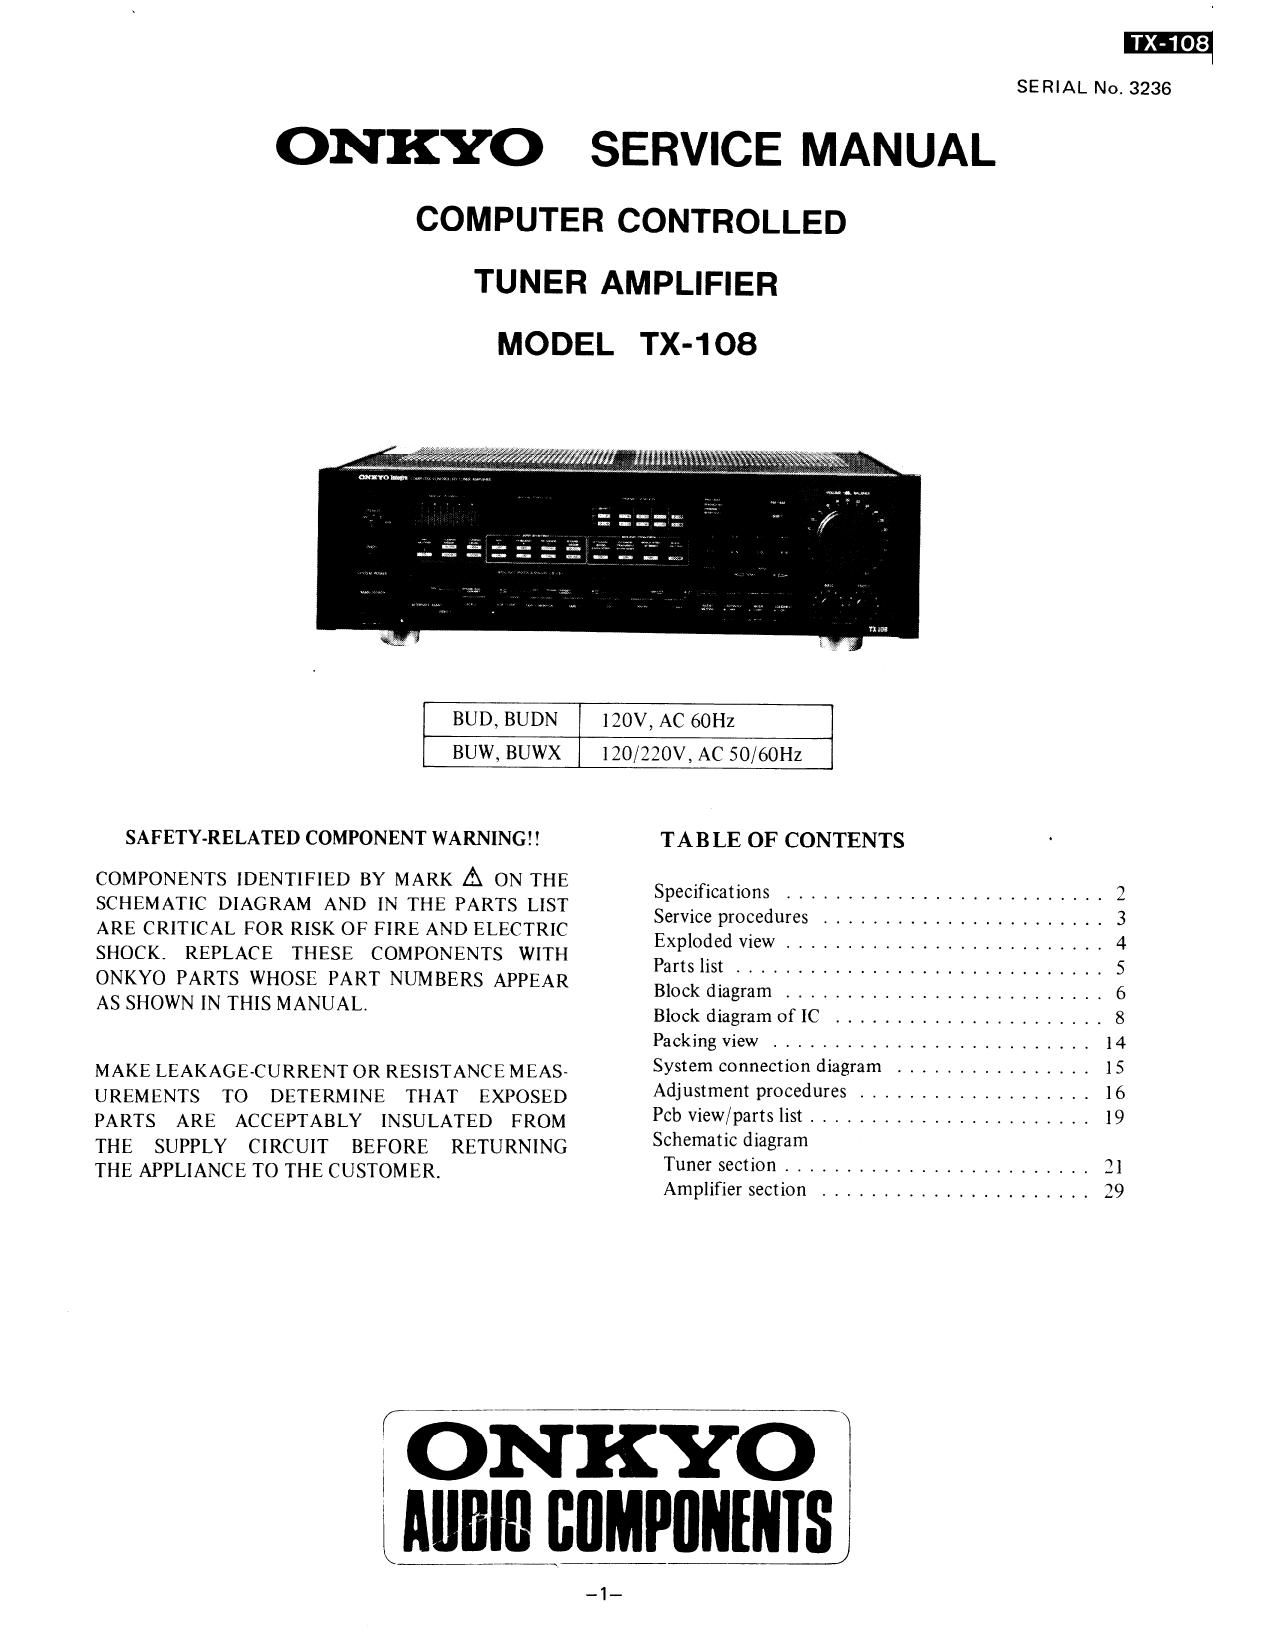 Onkyo TX 108 Service Manual